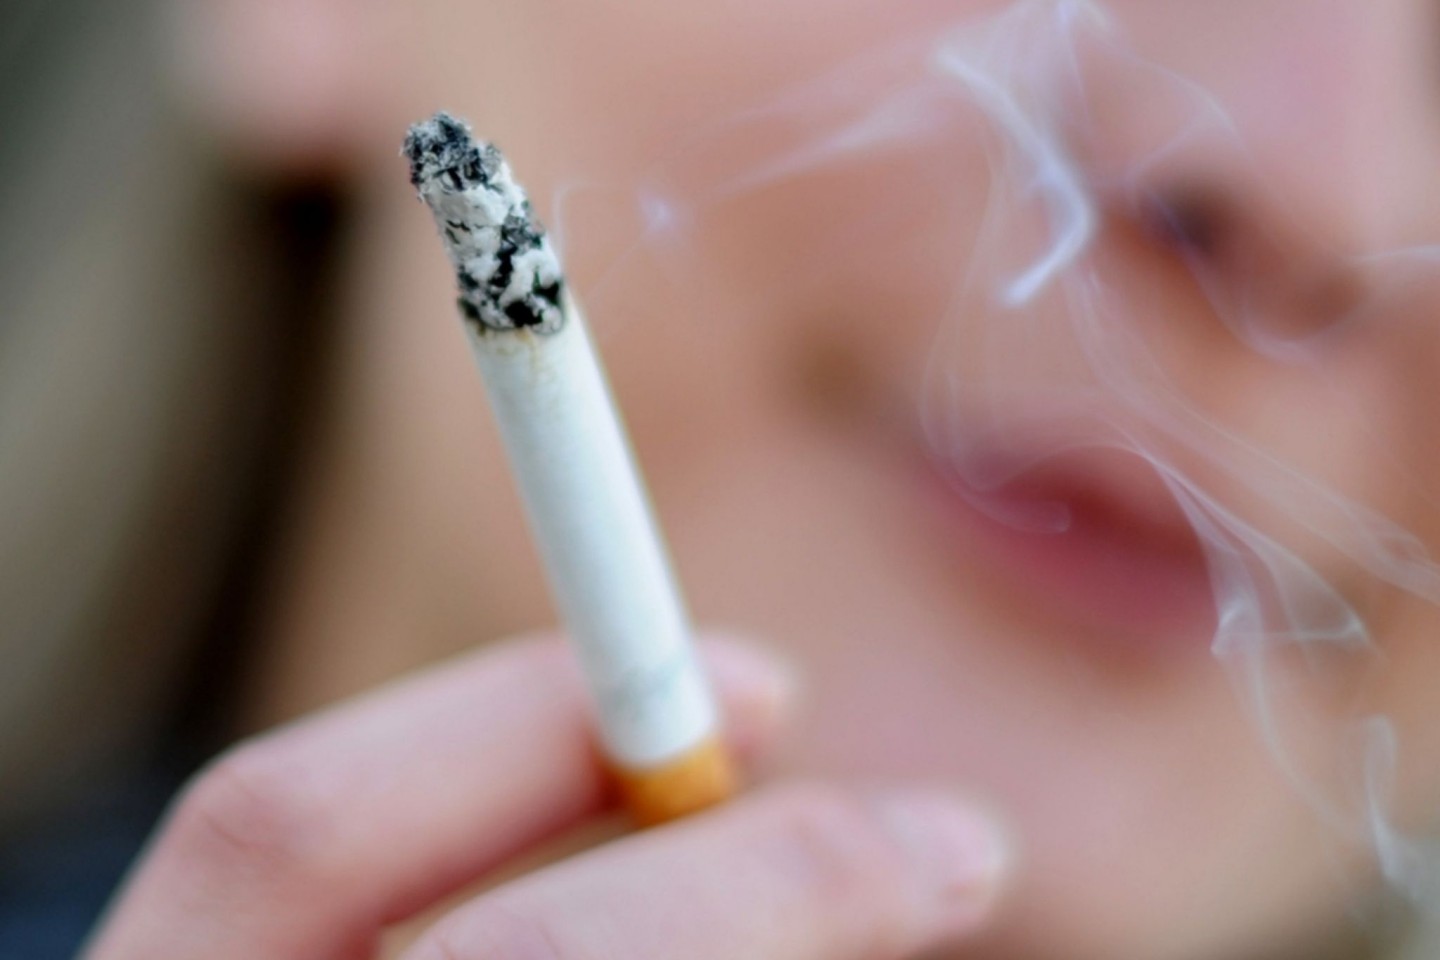 Kanada will ein Land werden, in dem es bald so gut wie keine Raucher mehr gibt.